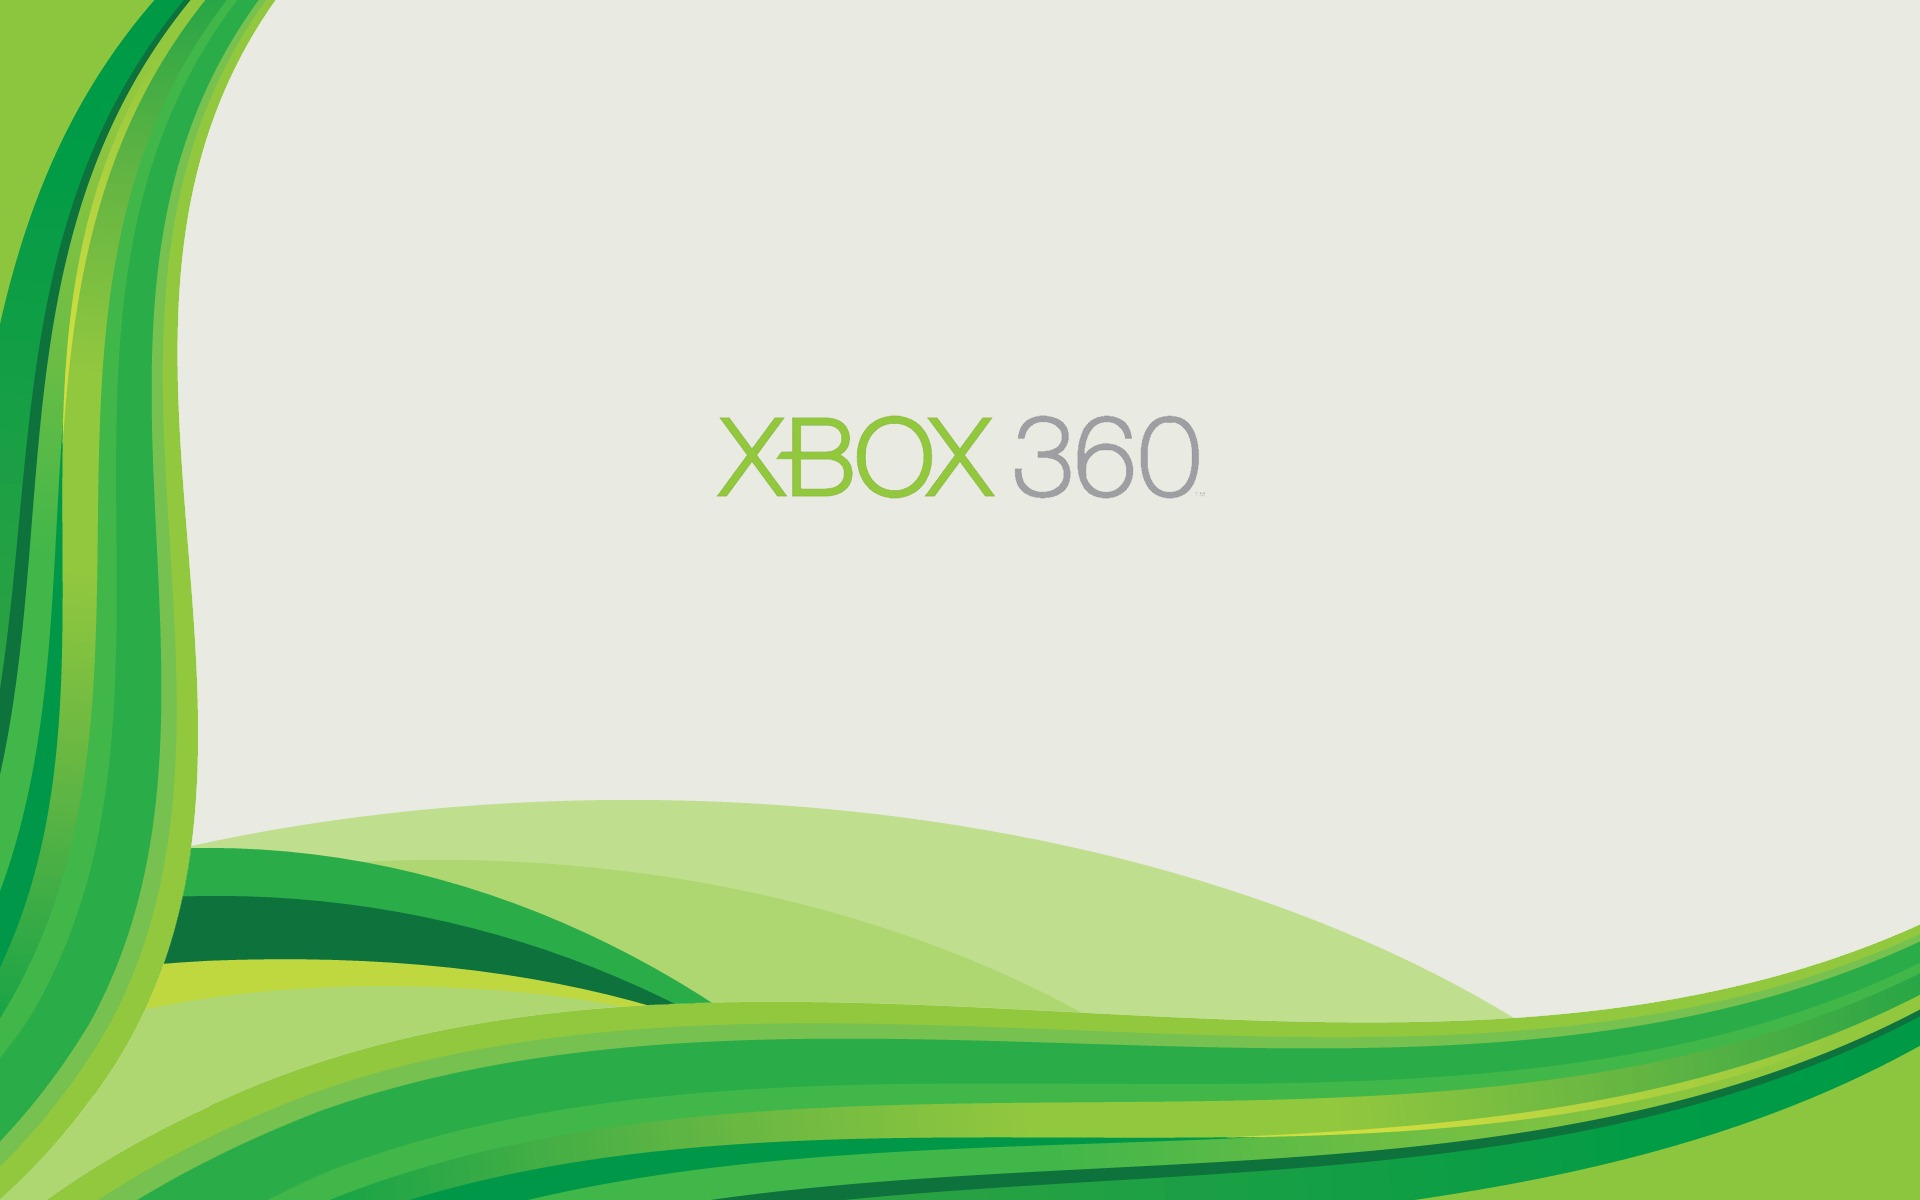 Tải về miễn phí Logo Xbox 360: Nếu bạn là fan cứng của Xbox 360, bạn không nên bỏ qua cơ hội này. Hãy tải ngay Logo Xbox 360 miễn phí để giúp cho tựa game console yêu thích của bạn thêm phần chuyên nghiệp và bắt mắt. Với thiết kế đơn giản và sắc nét, bạn sẽ không thể bỏ qua được Logo Xbox